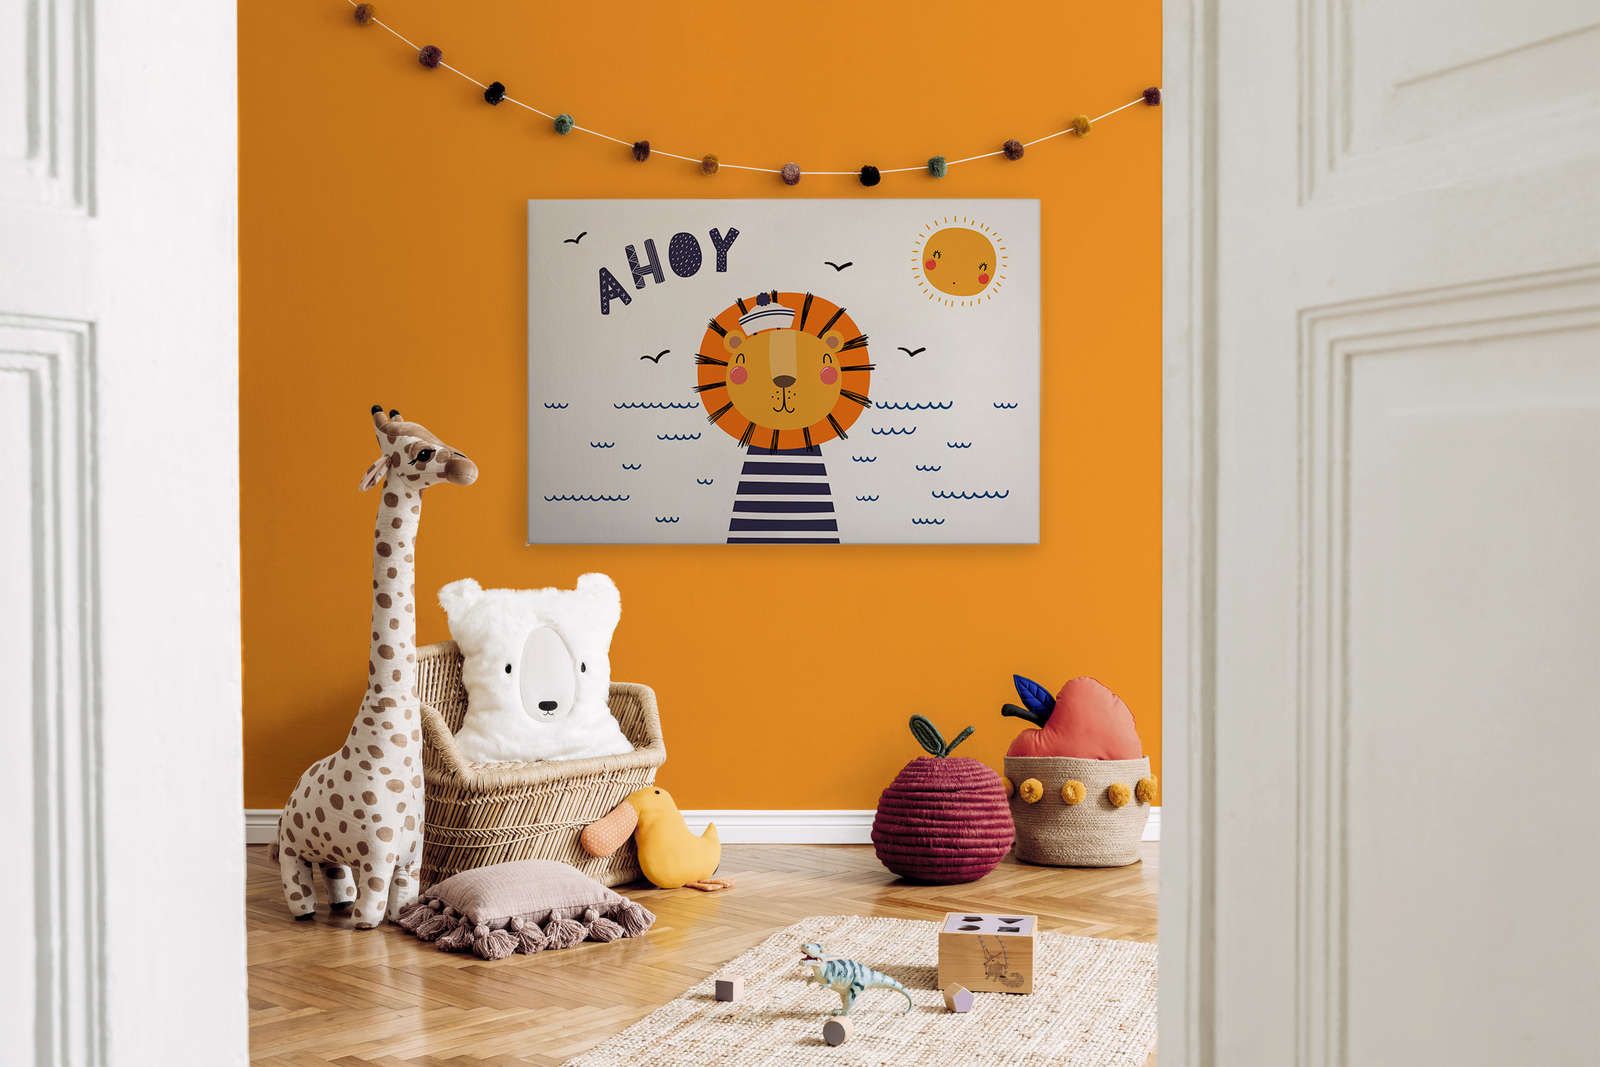             Leinwand fürs Kinderzimmer mit Löwen-Pirat – 120 cm x 80 cm
        